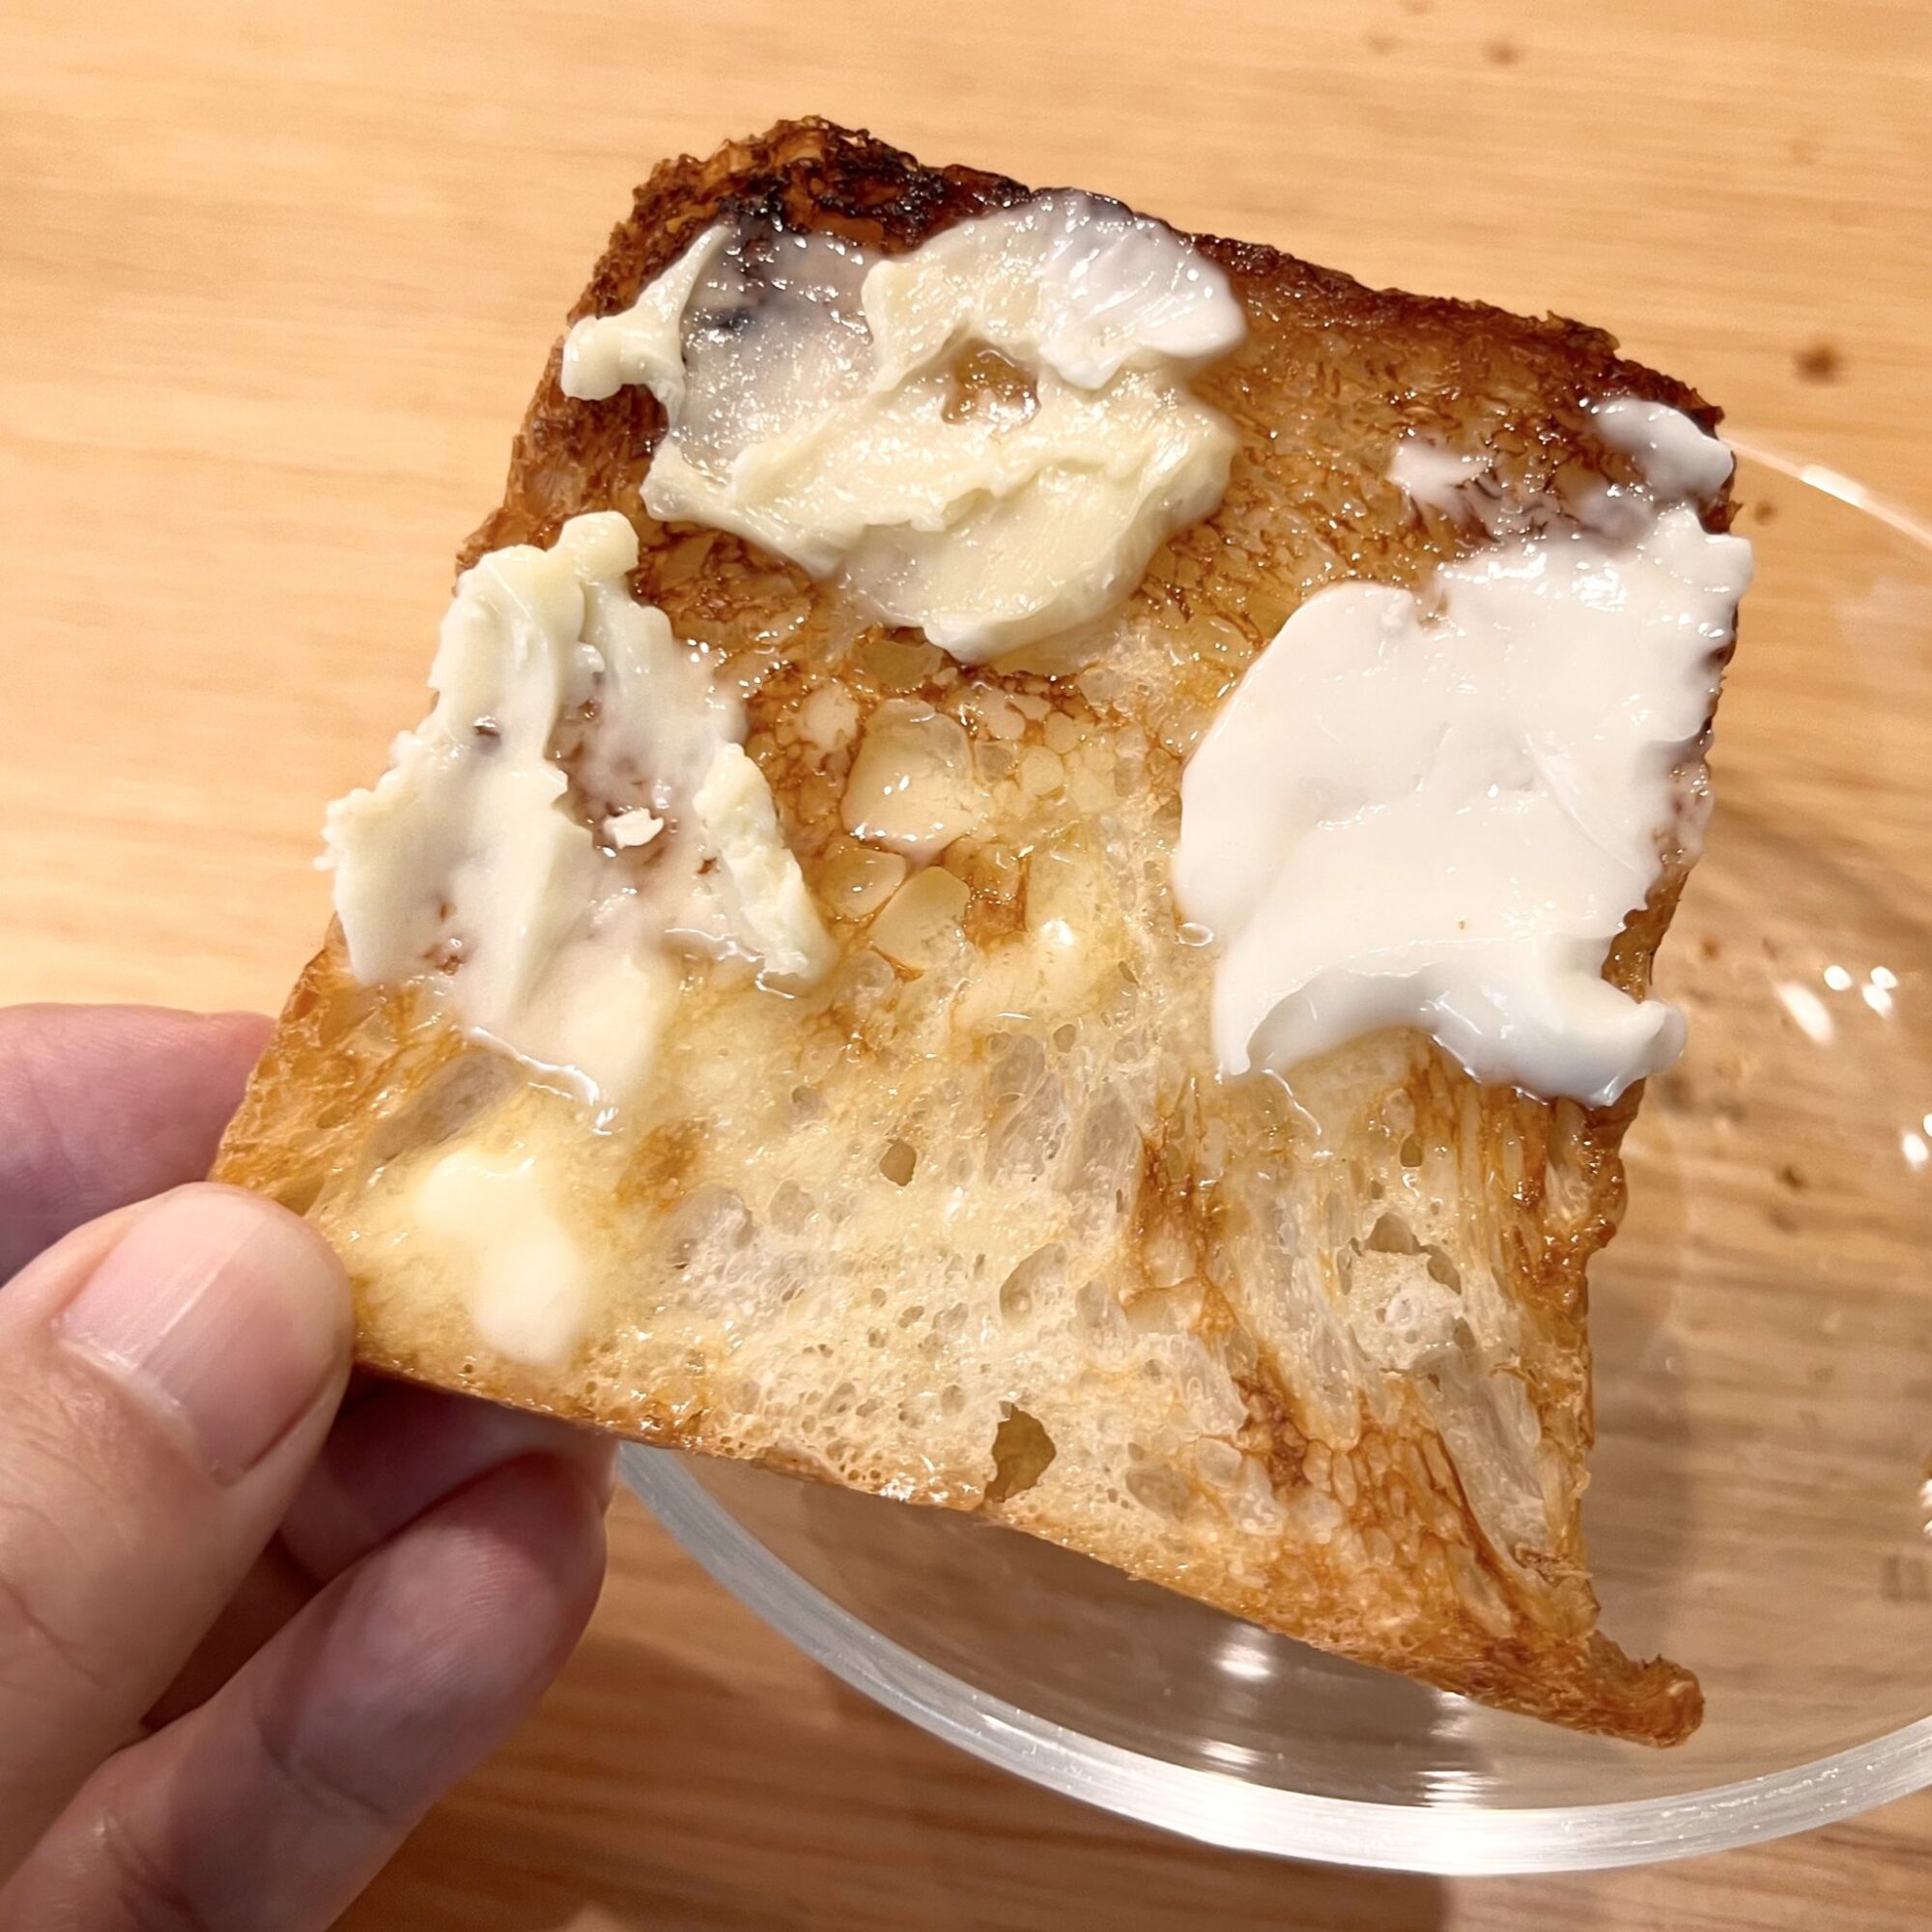 【練馬 桜台】「天然酵母のパン オオナミ」の食パンがめちゃめちゃおいしい